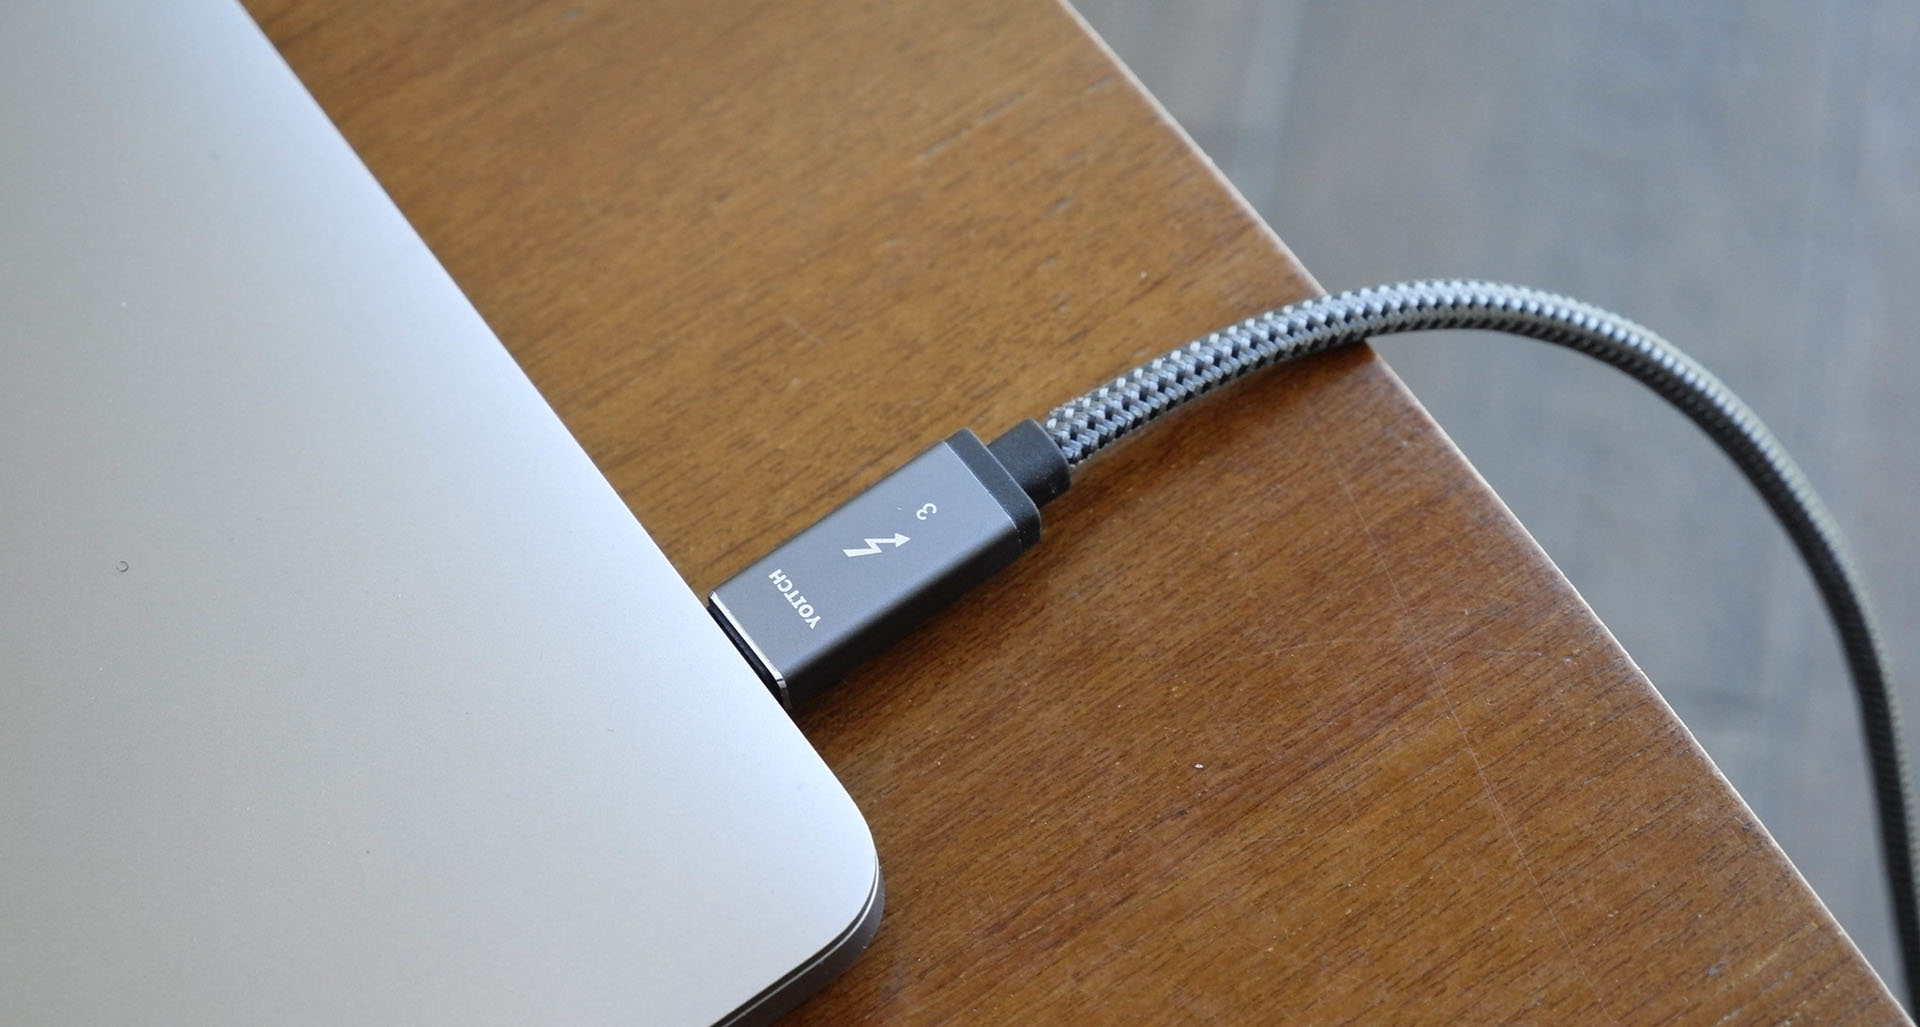 MagSafe 3, USB-C : tout ce qu'il faut savoir sur la recharge des